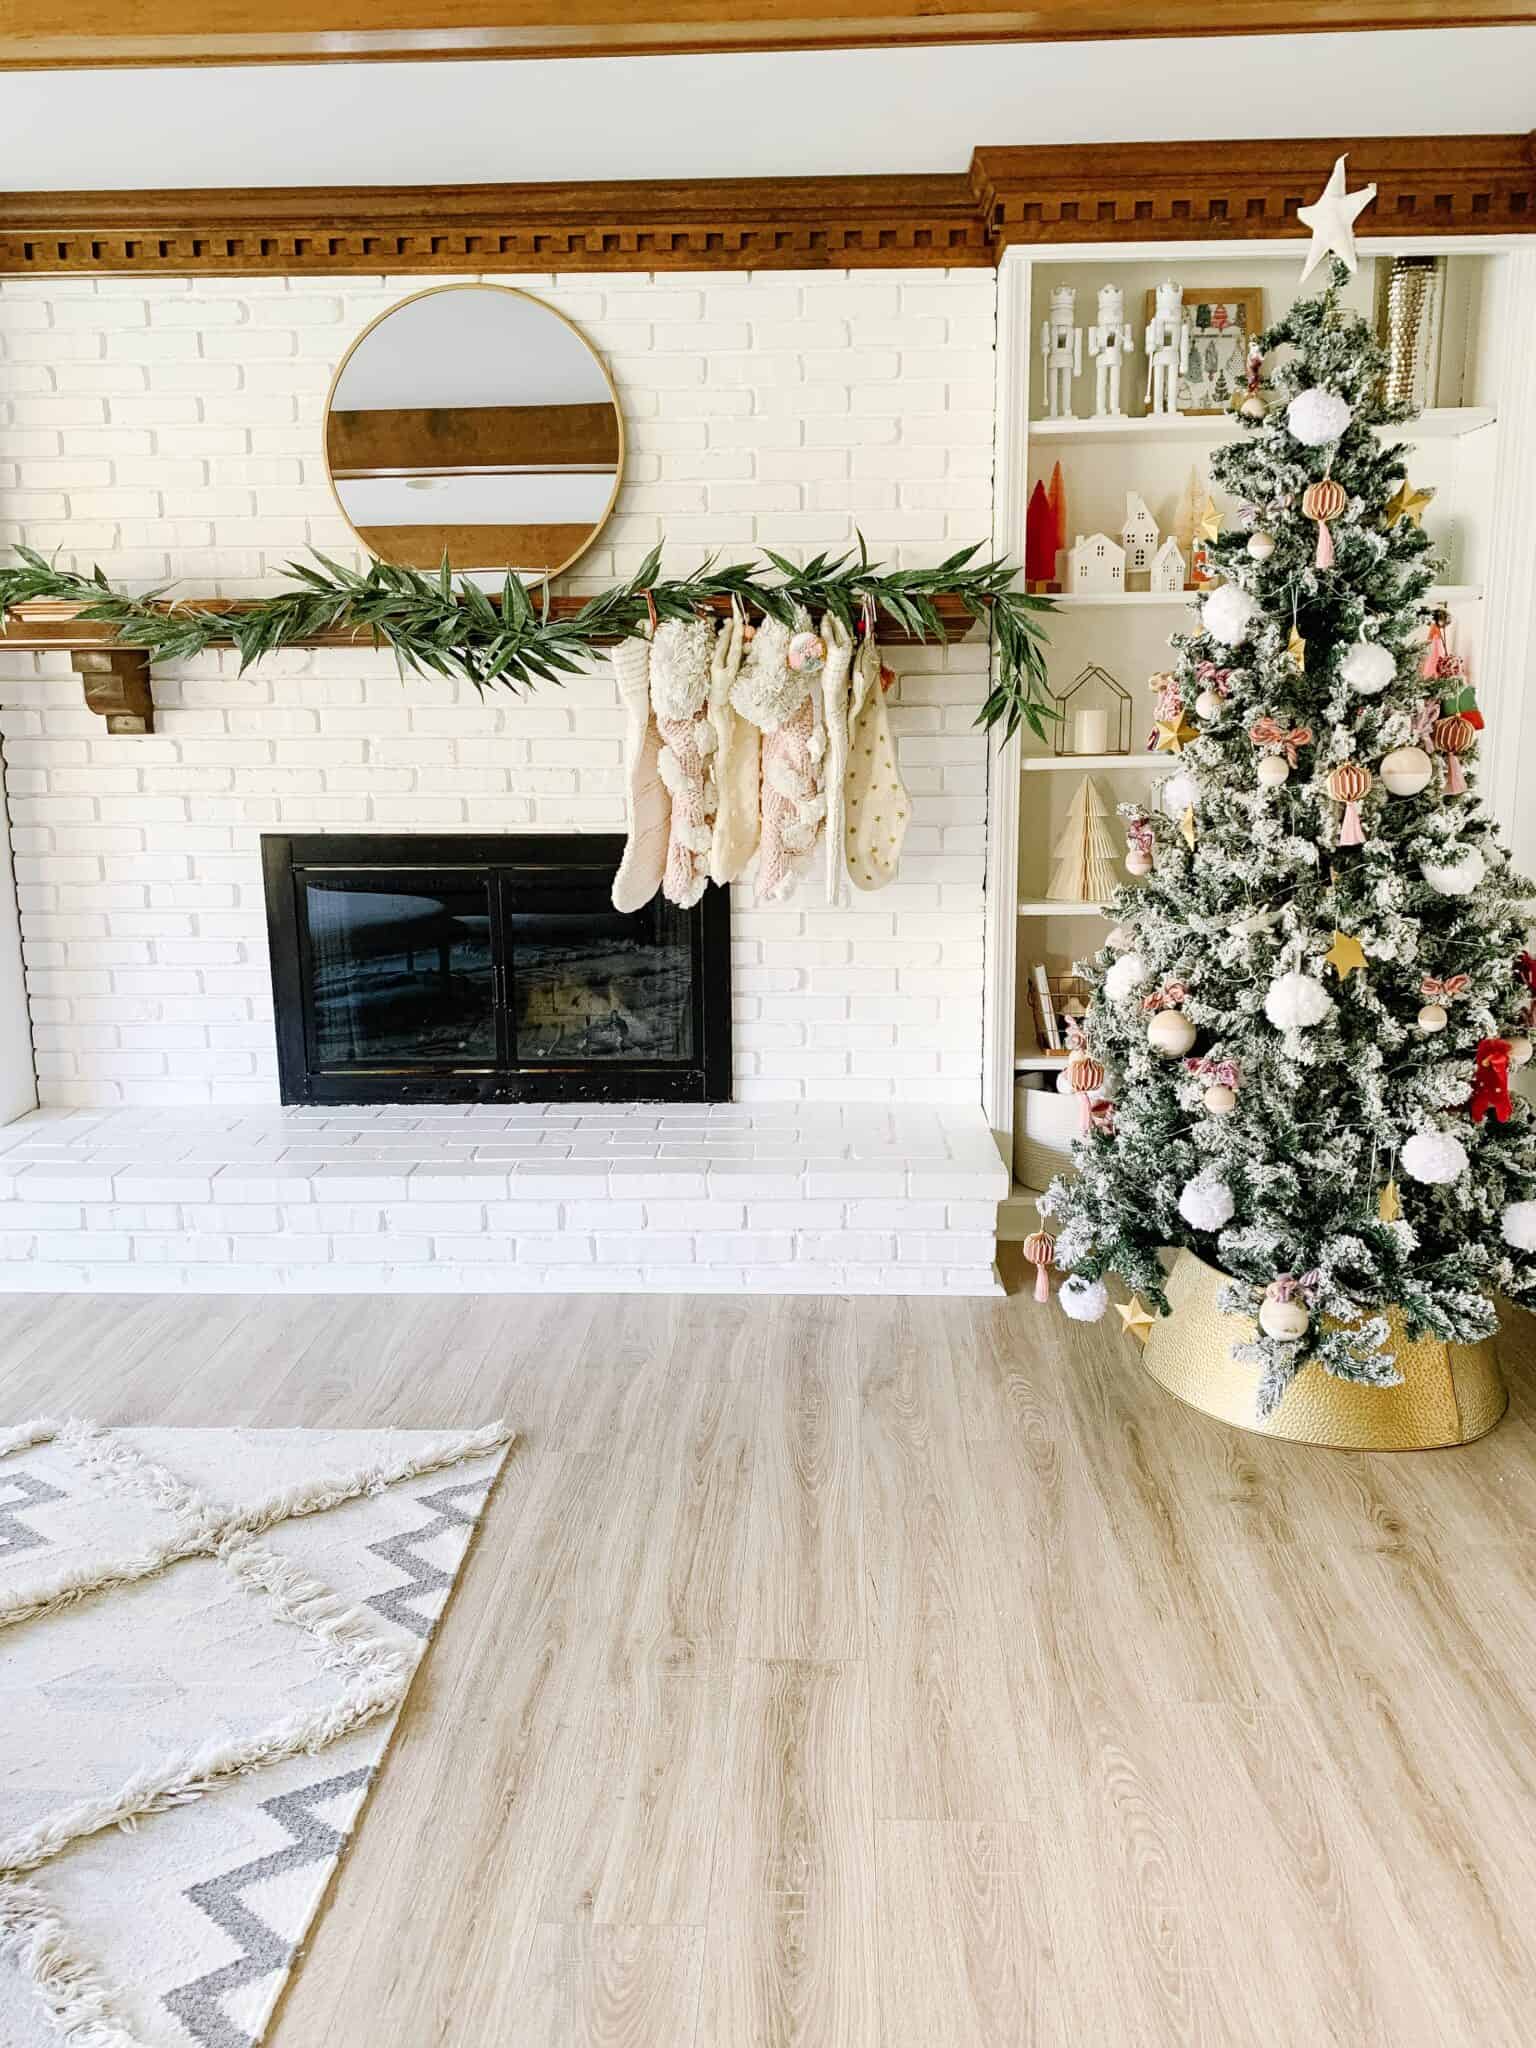 Modern living room with Christmas decor